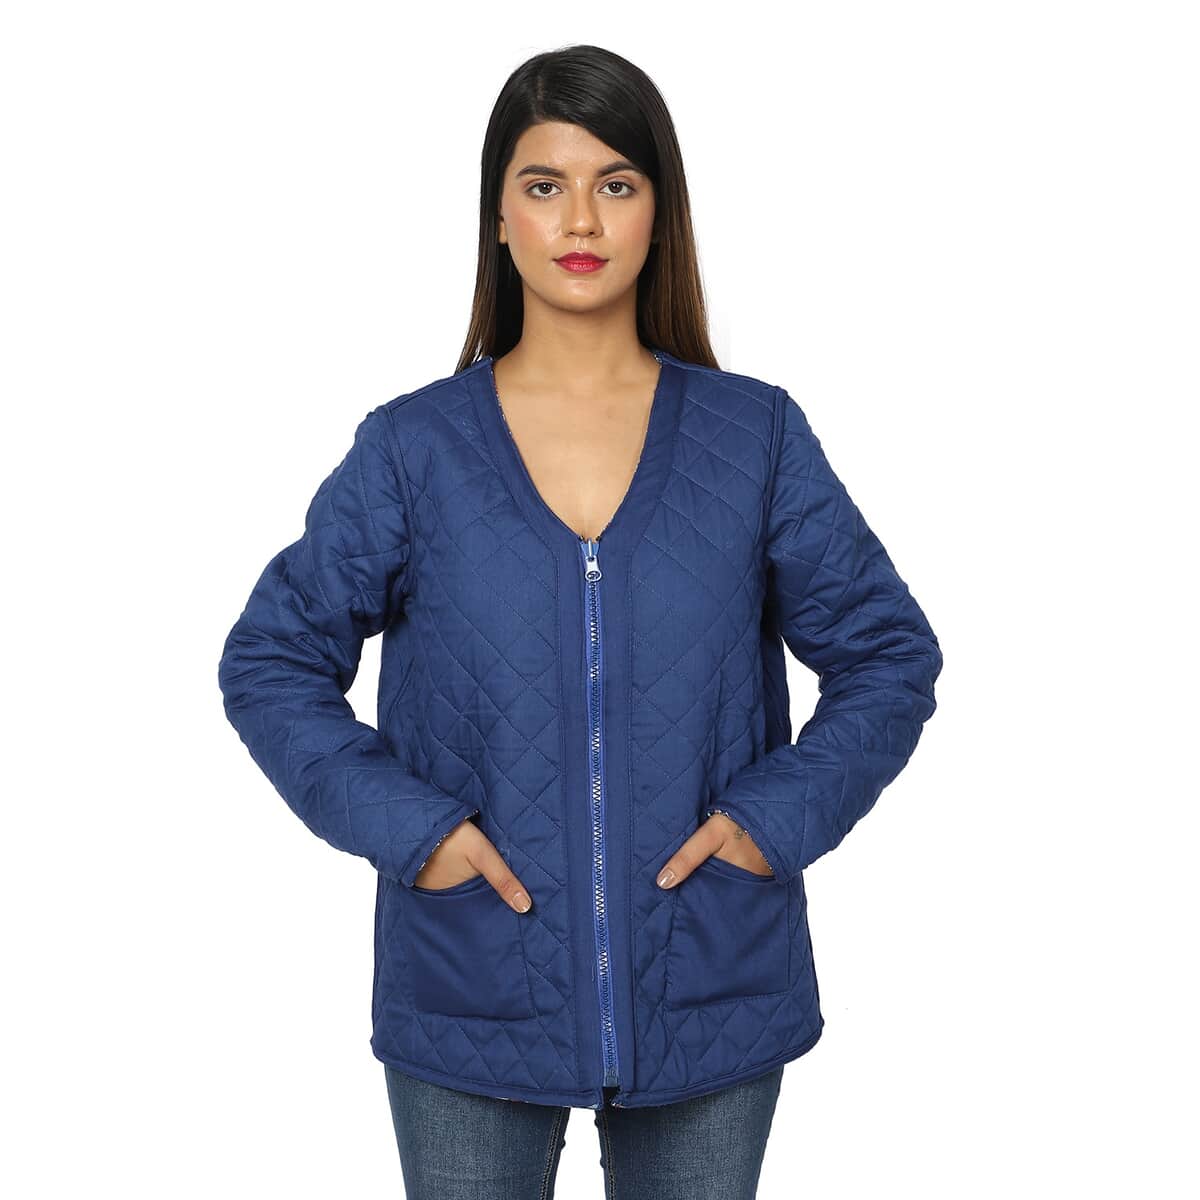 PASSAGE Reversible Quilted Jacket | V-Neck Zippered Quilted Jacket | Floral Print Jacket |100% Viscose Jacket | Blue Jacket- 2X image number 4